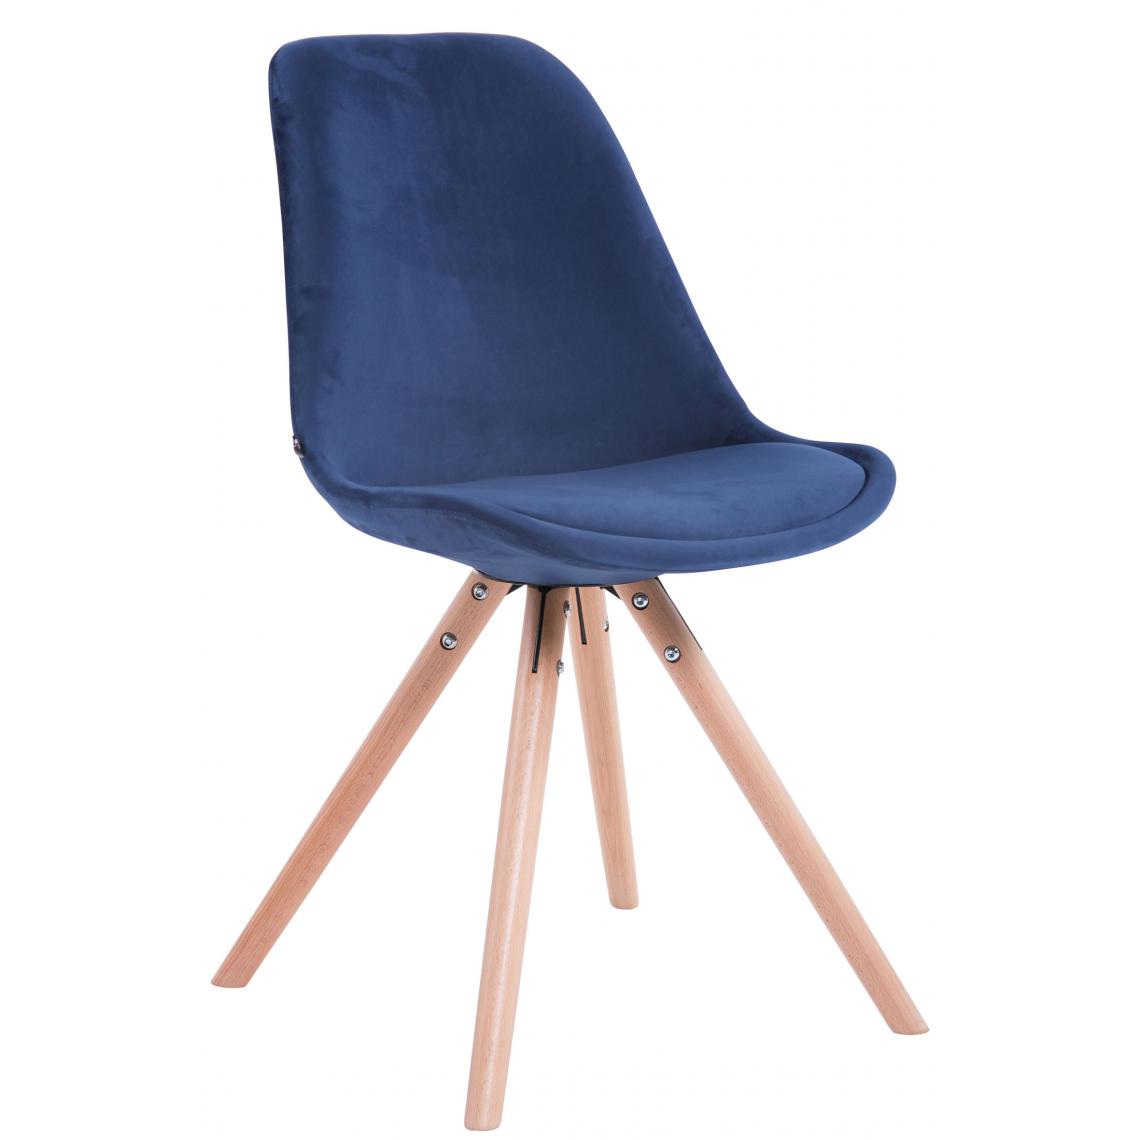 Icaverne - Splendide Chaise visiteur ronde en velours gamme Katmandou naturel couleur bleu - Chaises